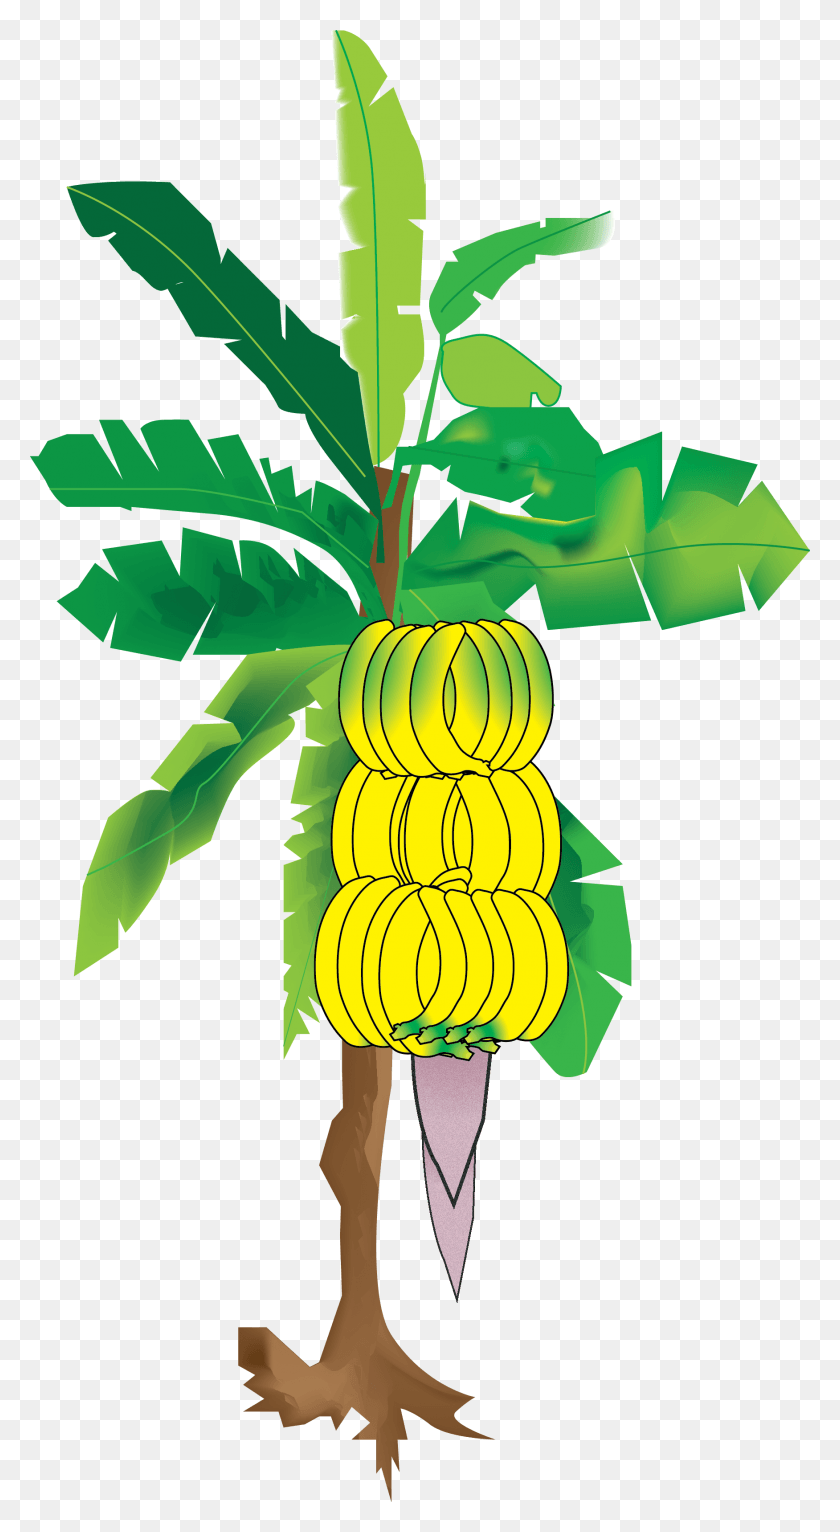 1751x3305 Descargar Png Mi Ilustración Del Árbol De Plátano De Sun39S Eye Un Árbol De Plátano Png, Planta, Alimentos, Fruta Hd Png